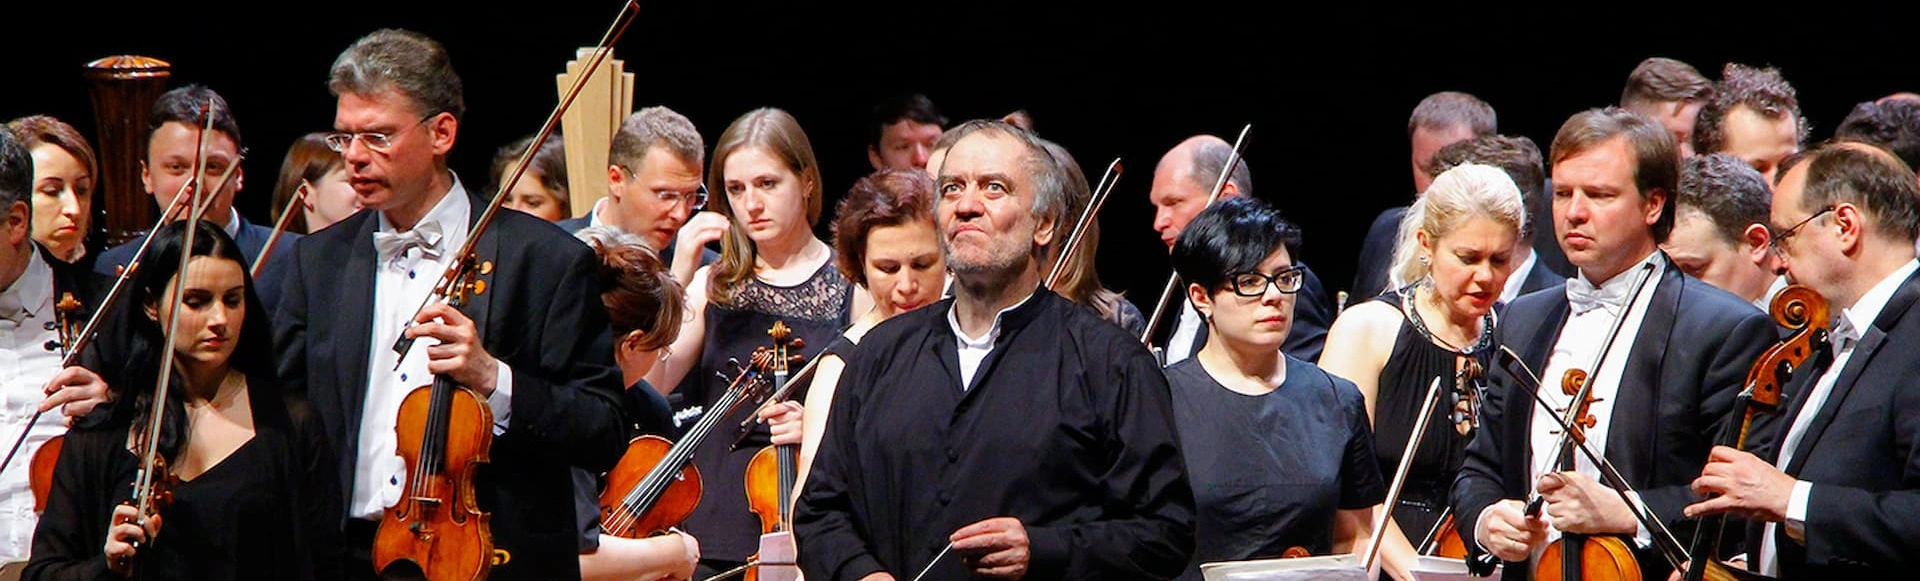 Симфонический оркестр Мариинского театра, дирижёр - Валерий Гергиев